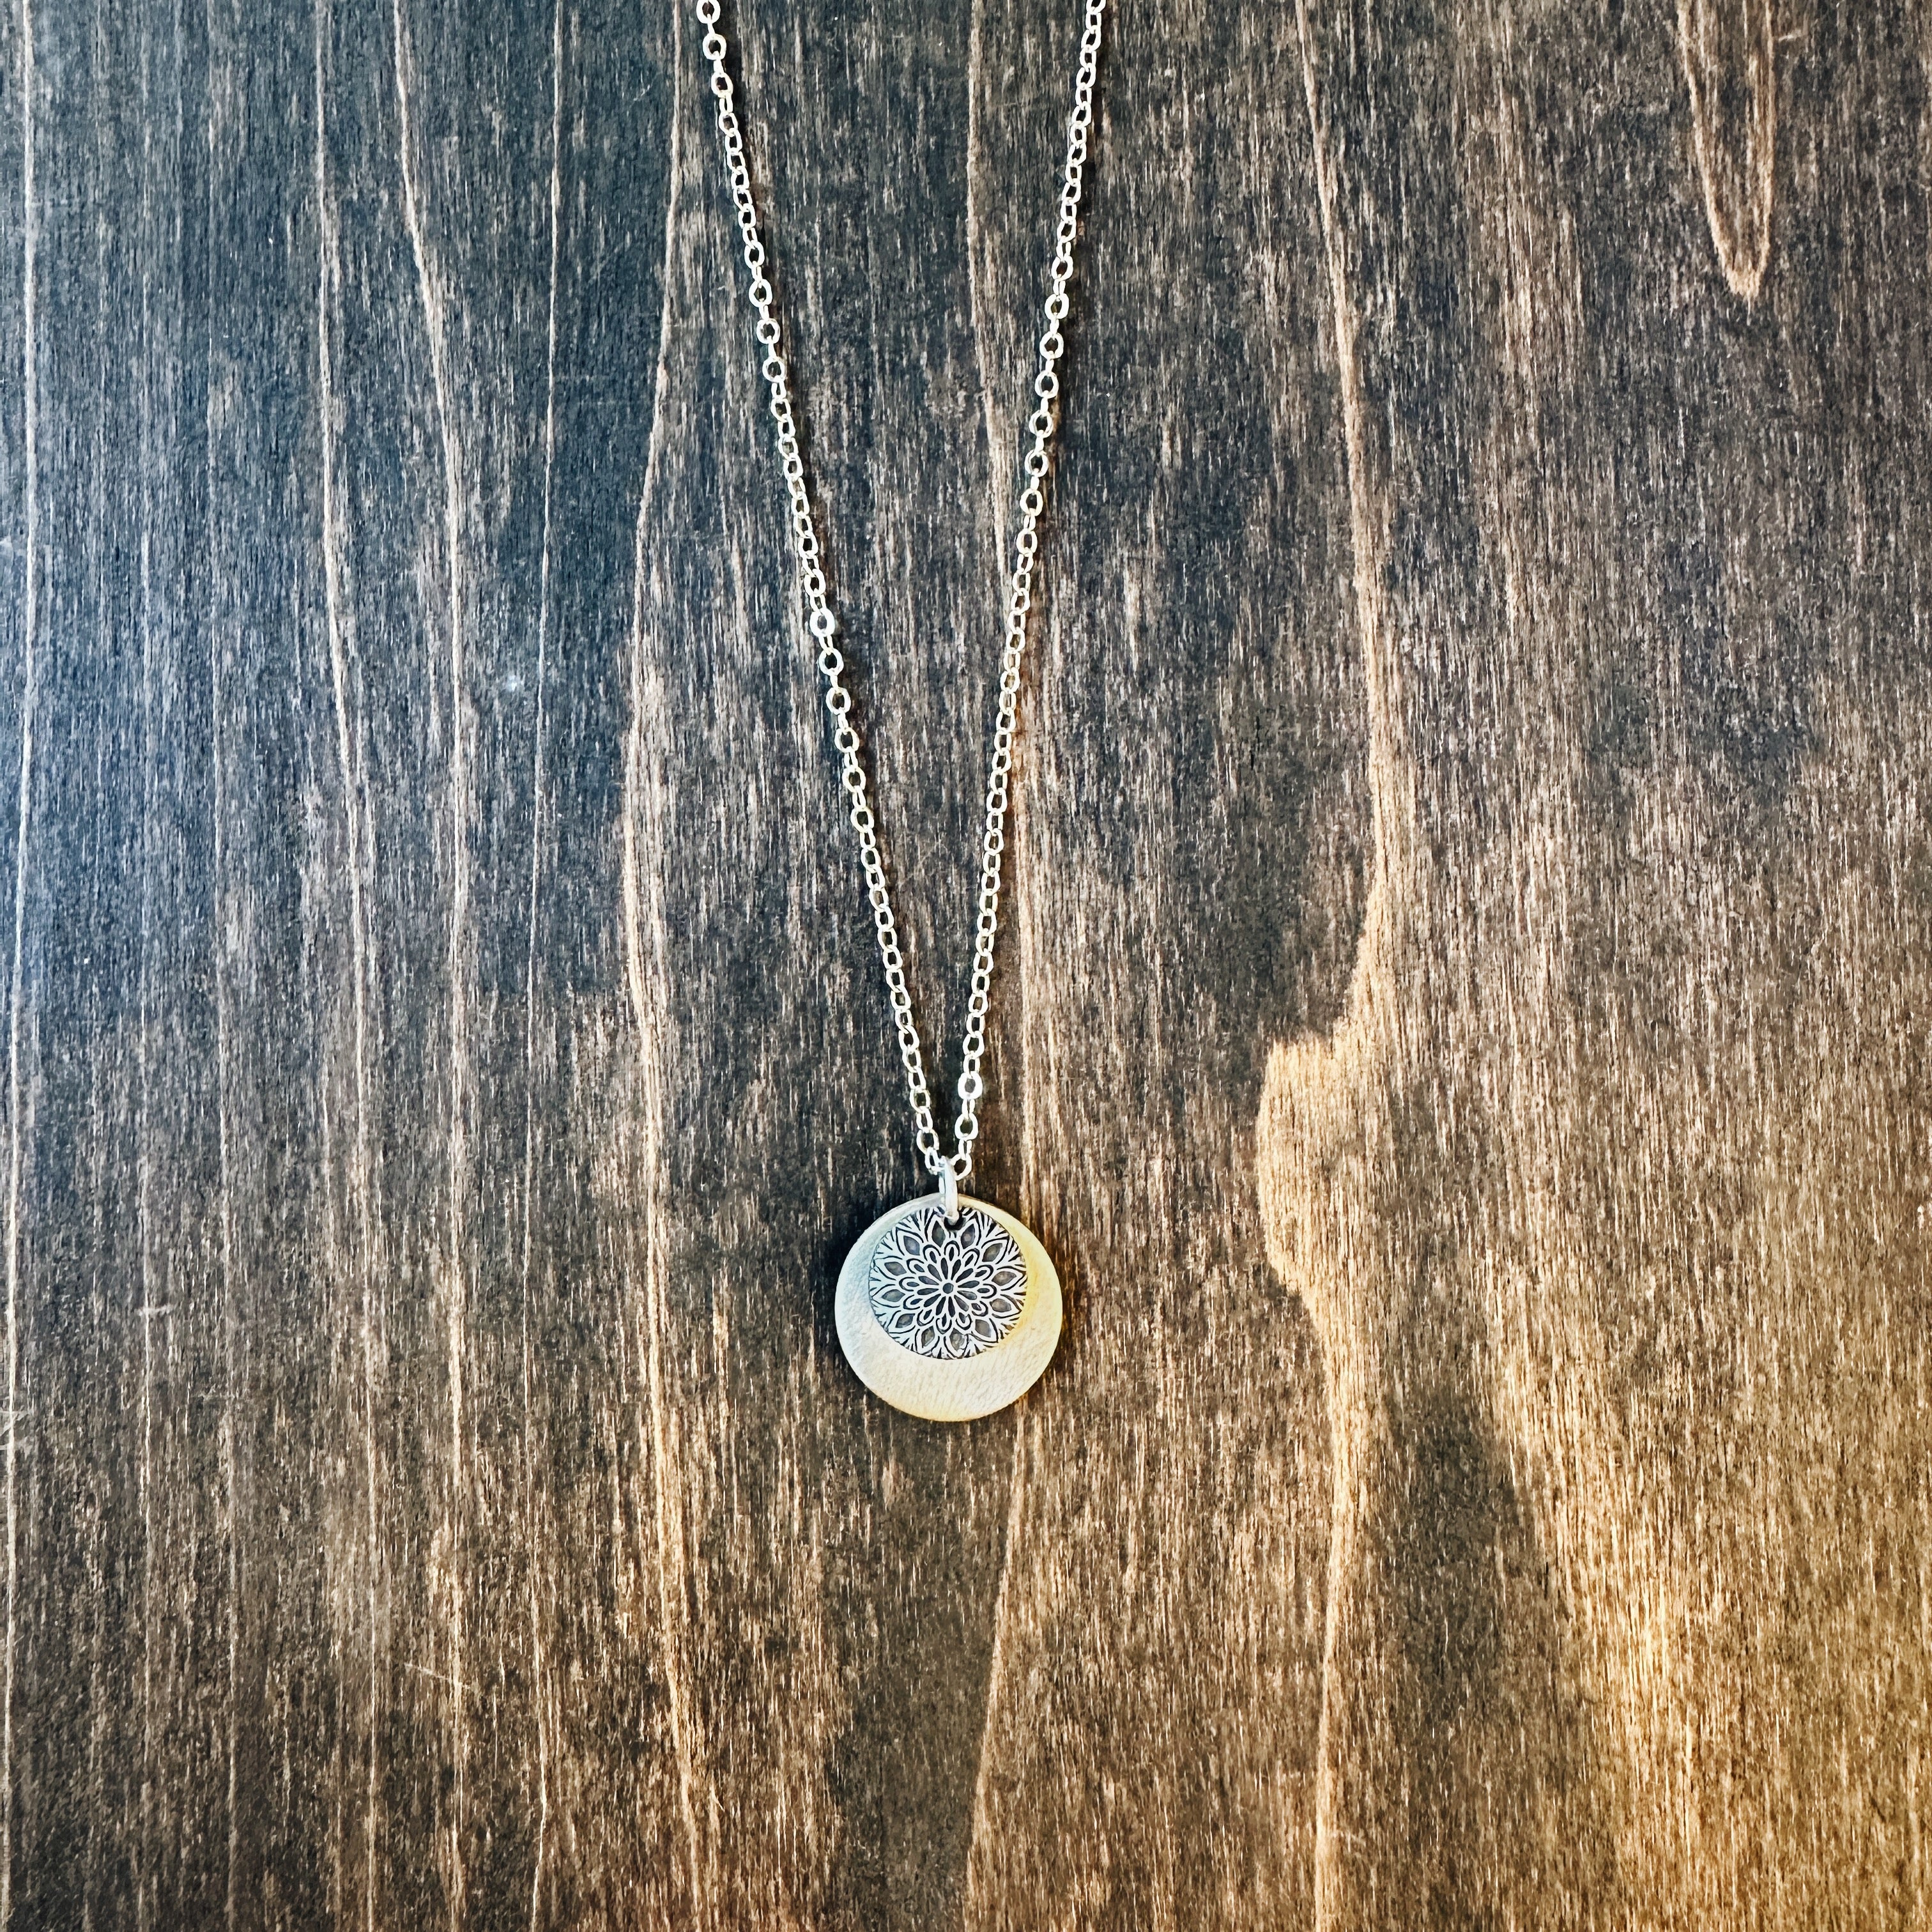 Mandala of Radiance Charm Necklace